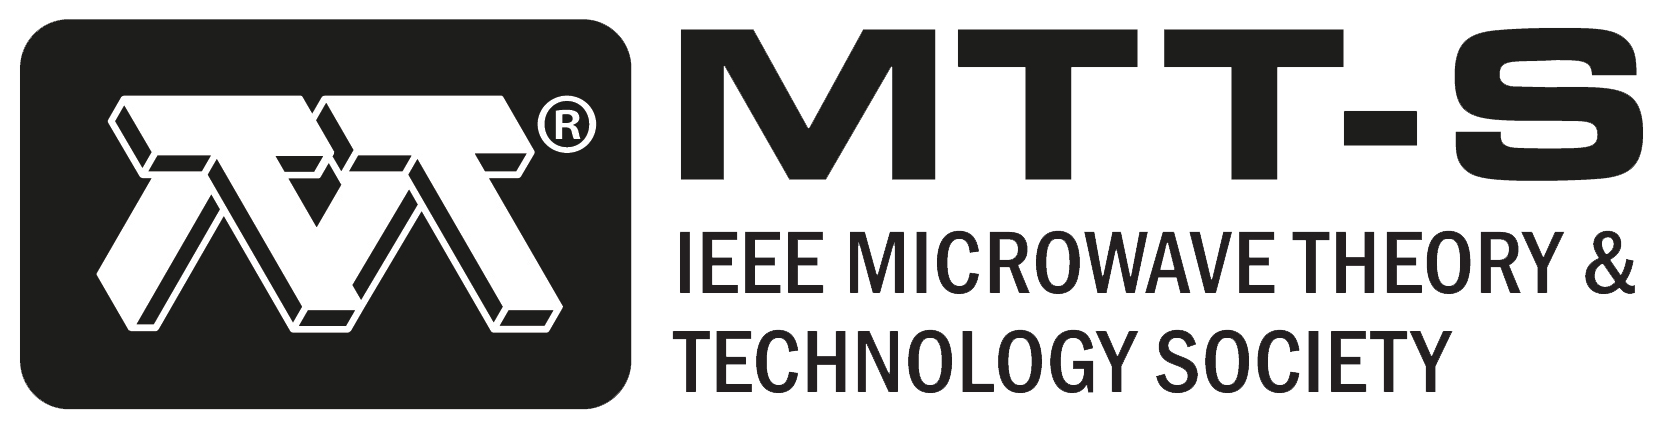 mtt-s-logo-white.png